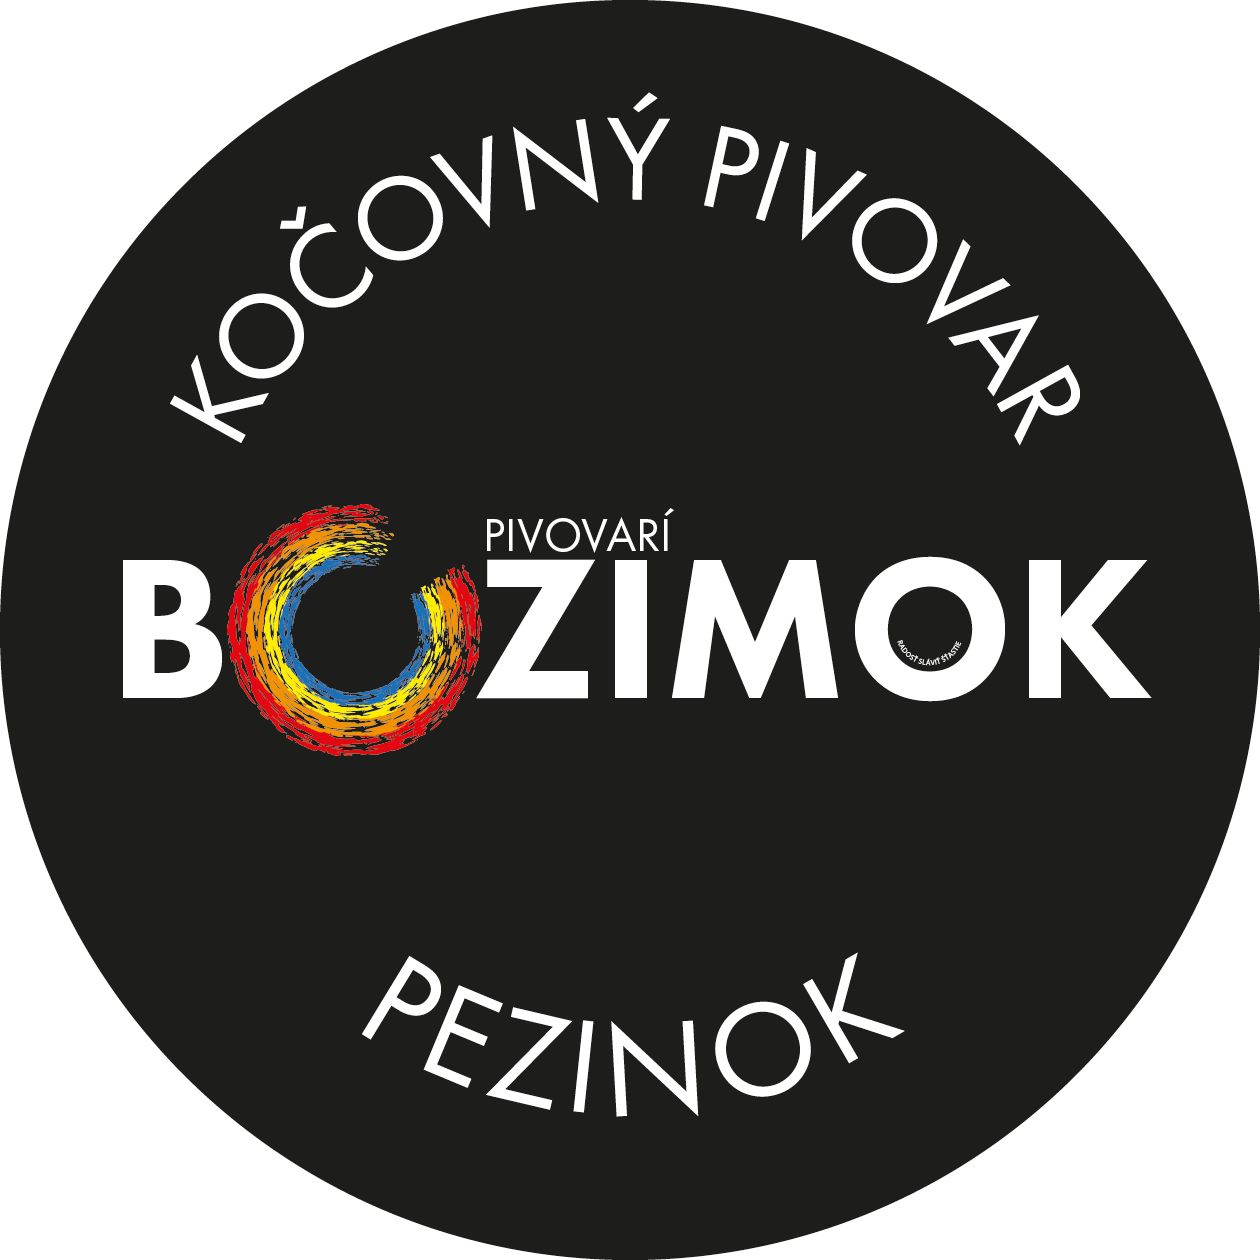 Kočovný pivovar Bozimok